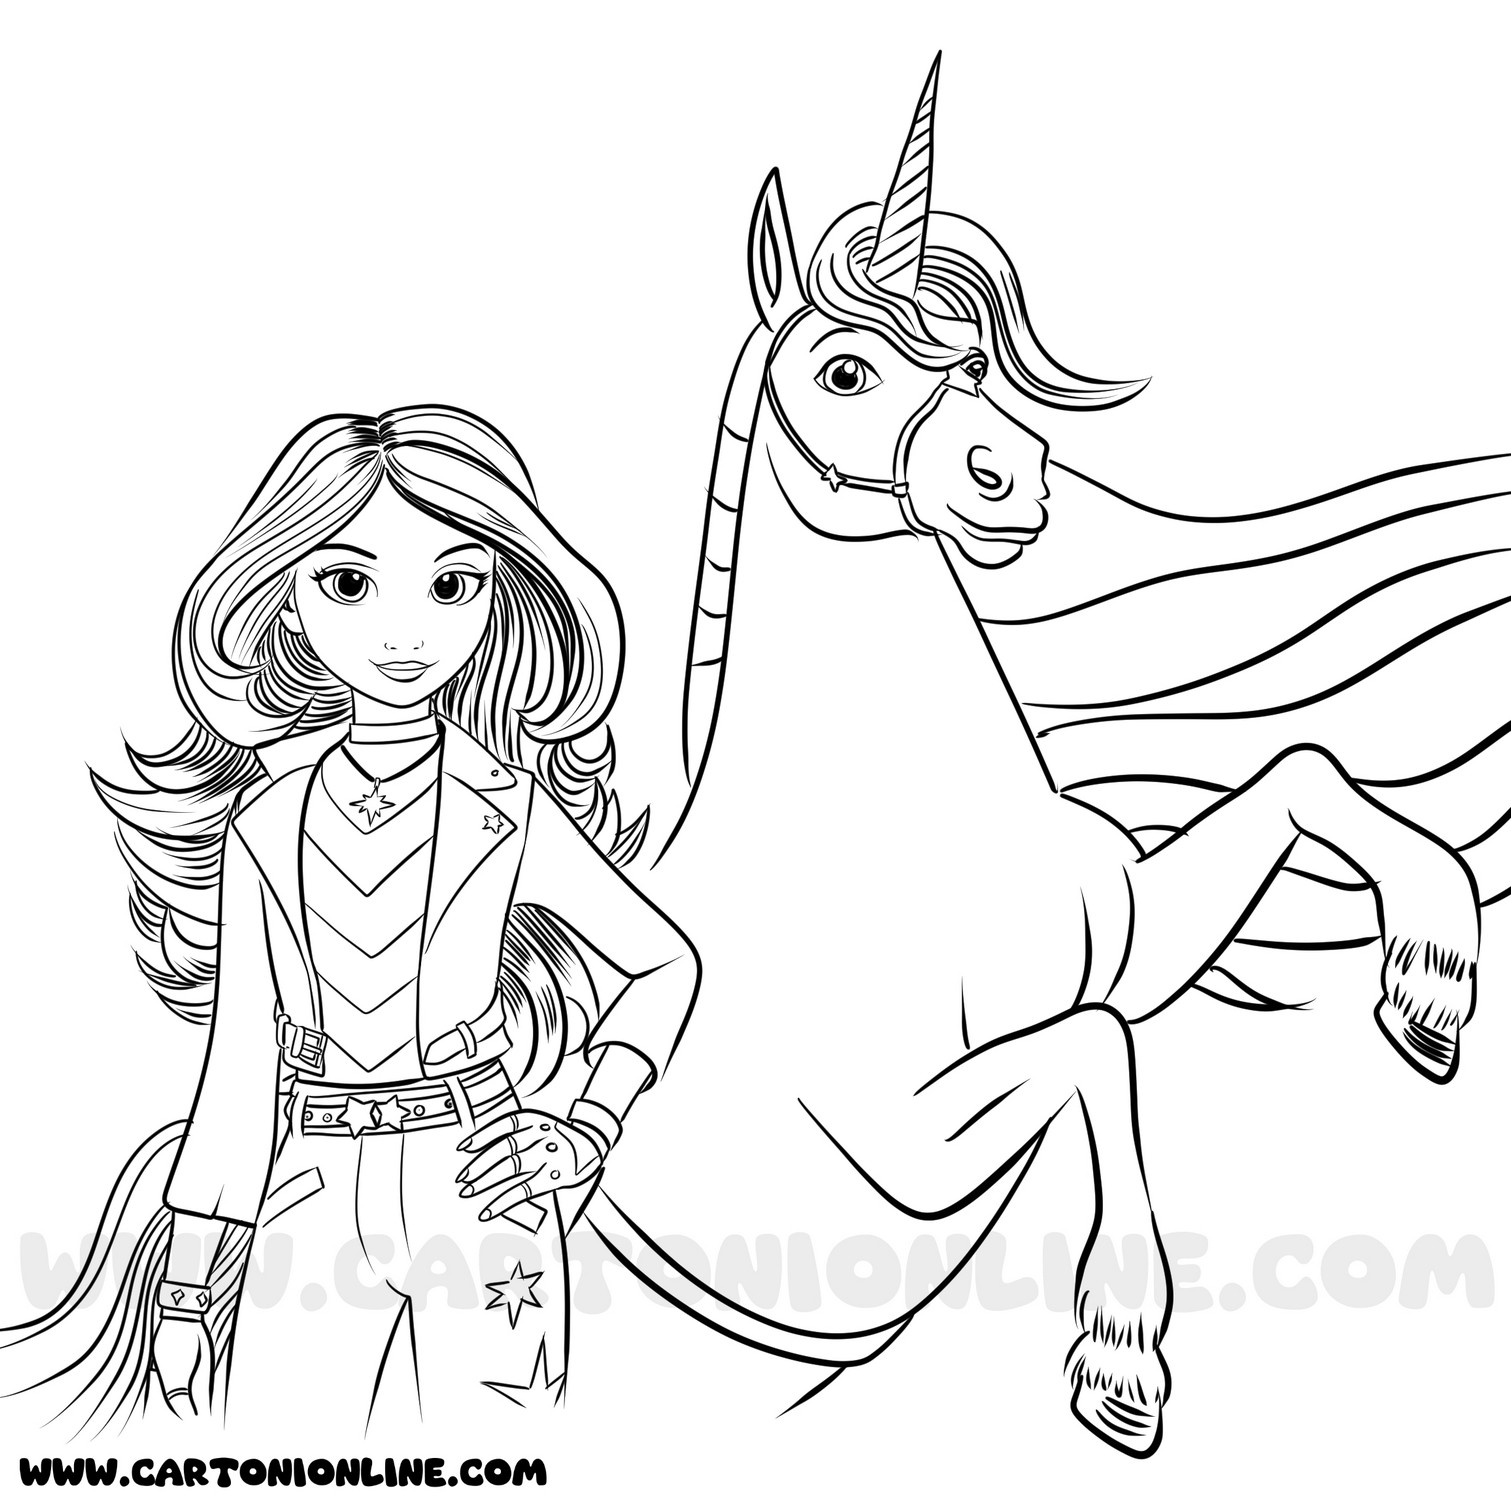 Dibujo 01 de Unicorn Academy para imprimir y colorear